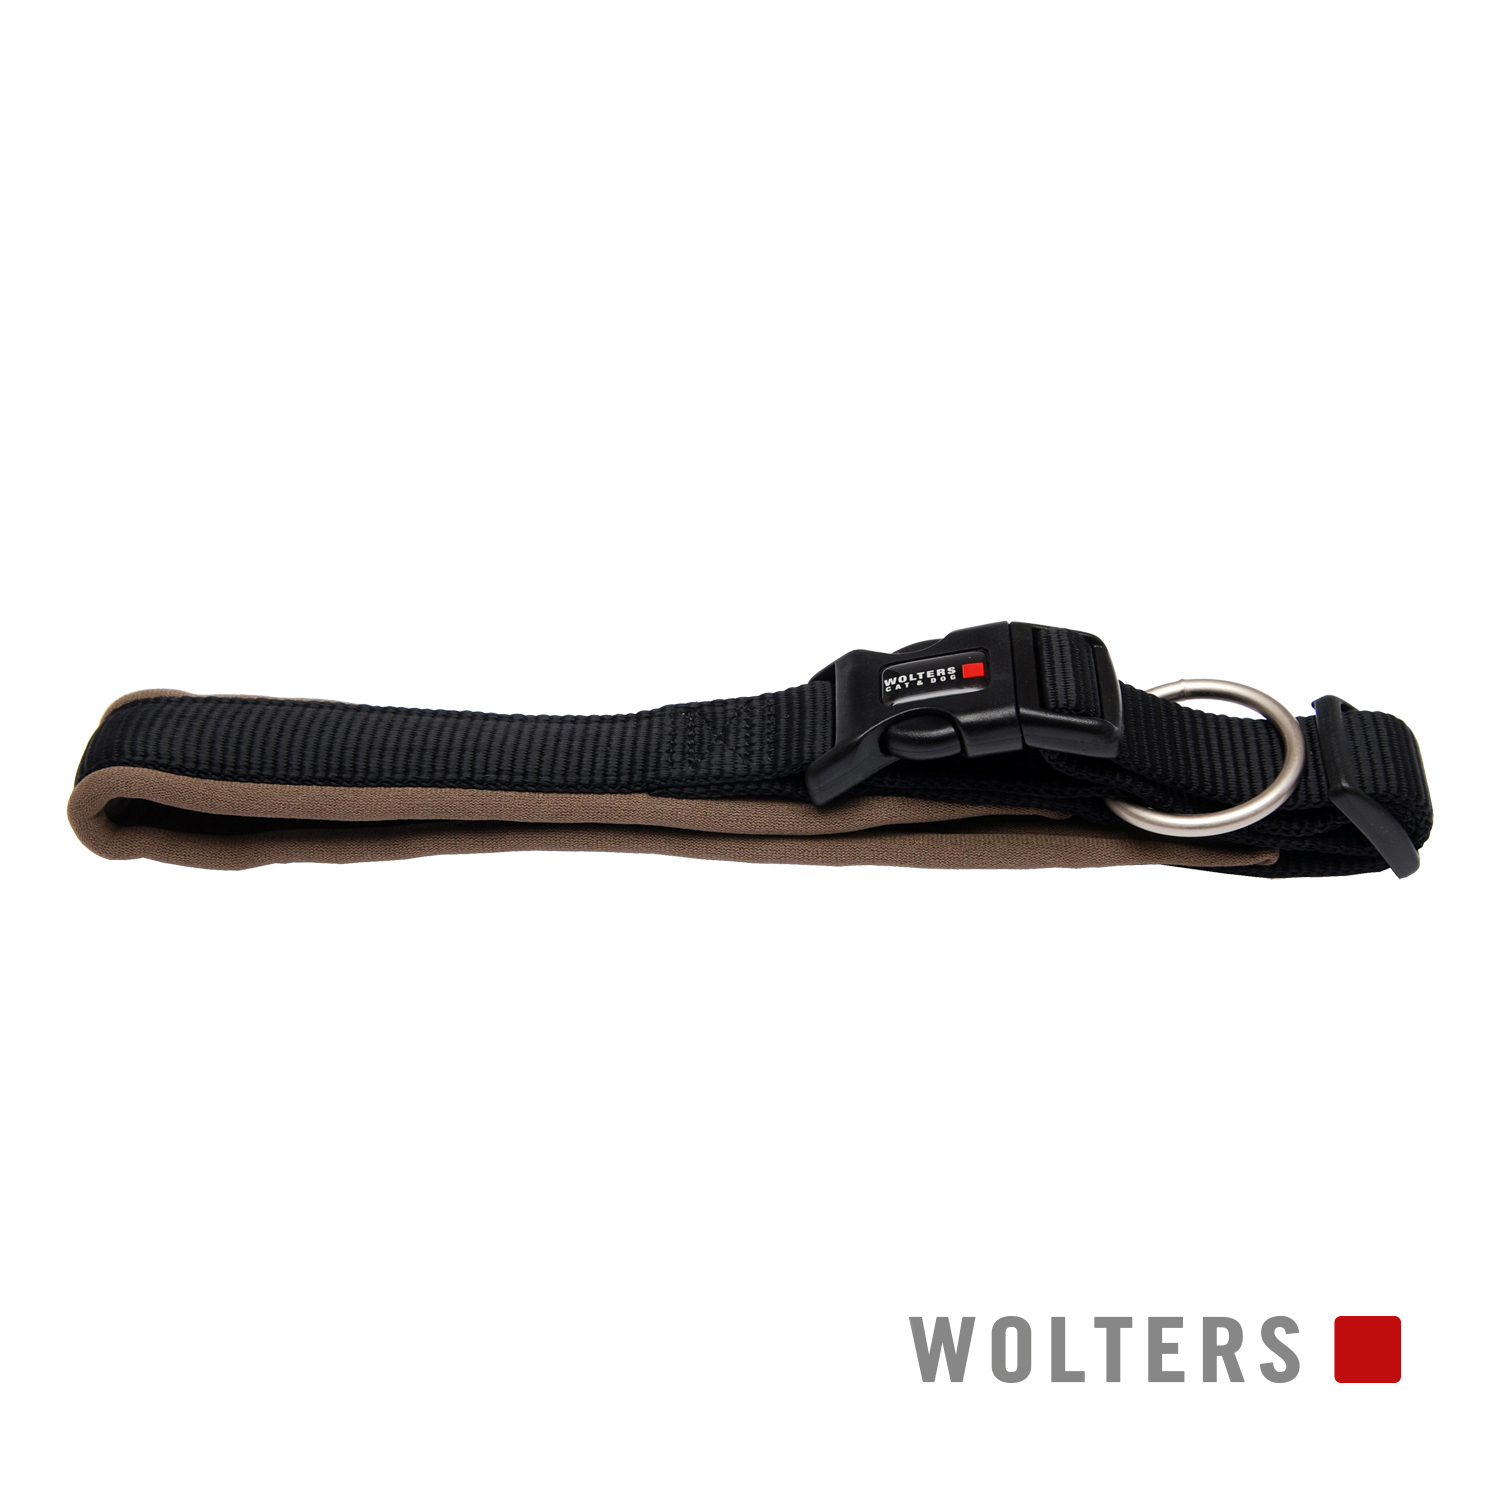 Wolters Halsband Professional Comfort Schwarz/Braun 25-30cm x 25mm